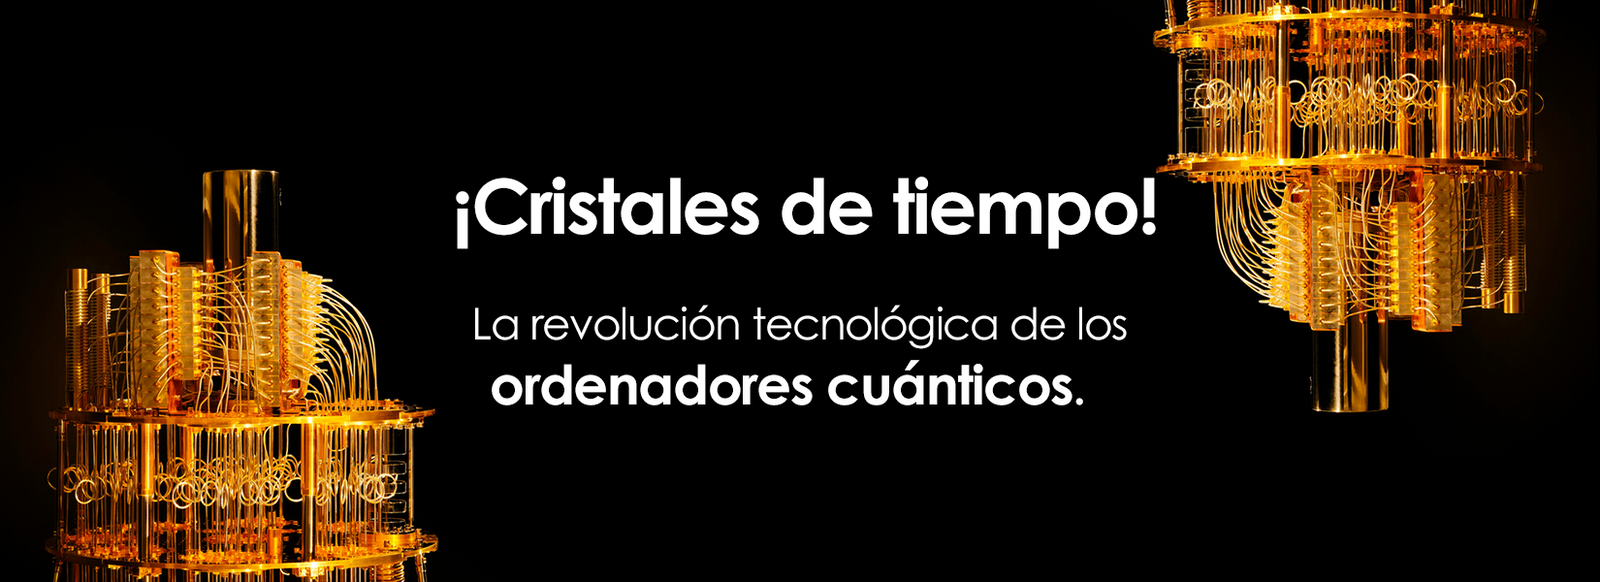 Cristales de tiempo, la revolución tecnología FullOffice.com